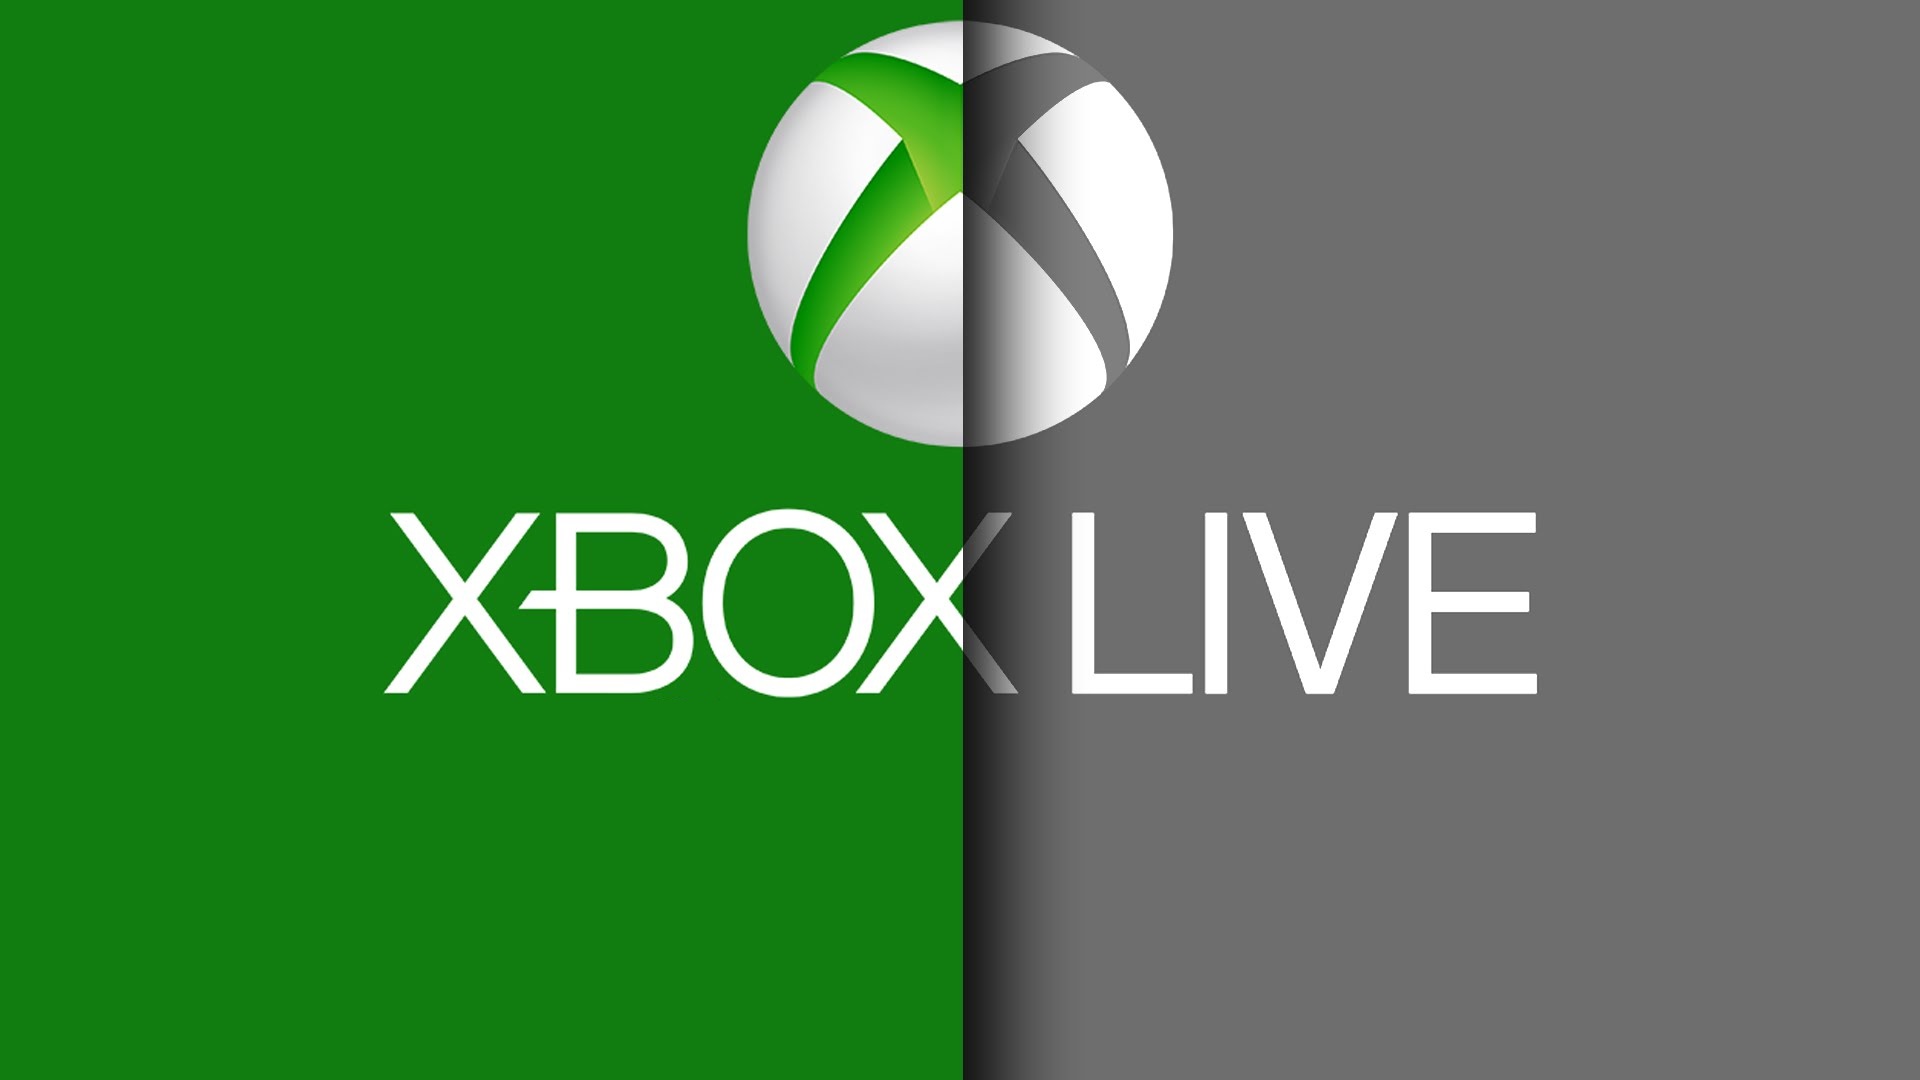 Masalah layanan baru memengaruhi Xbox Live sekarang